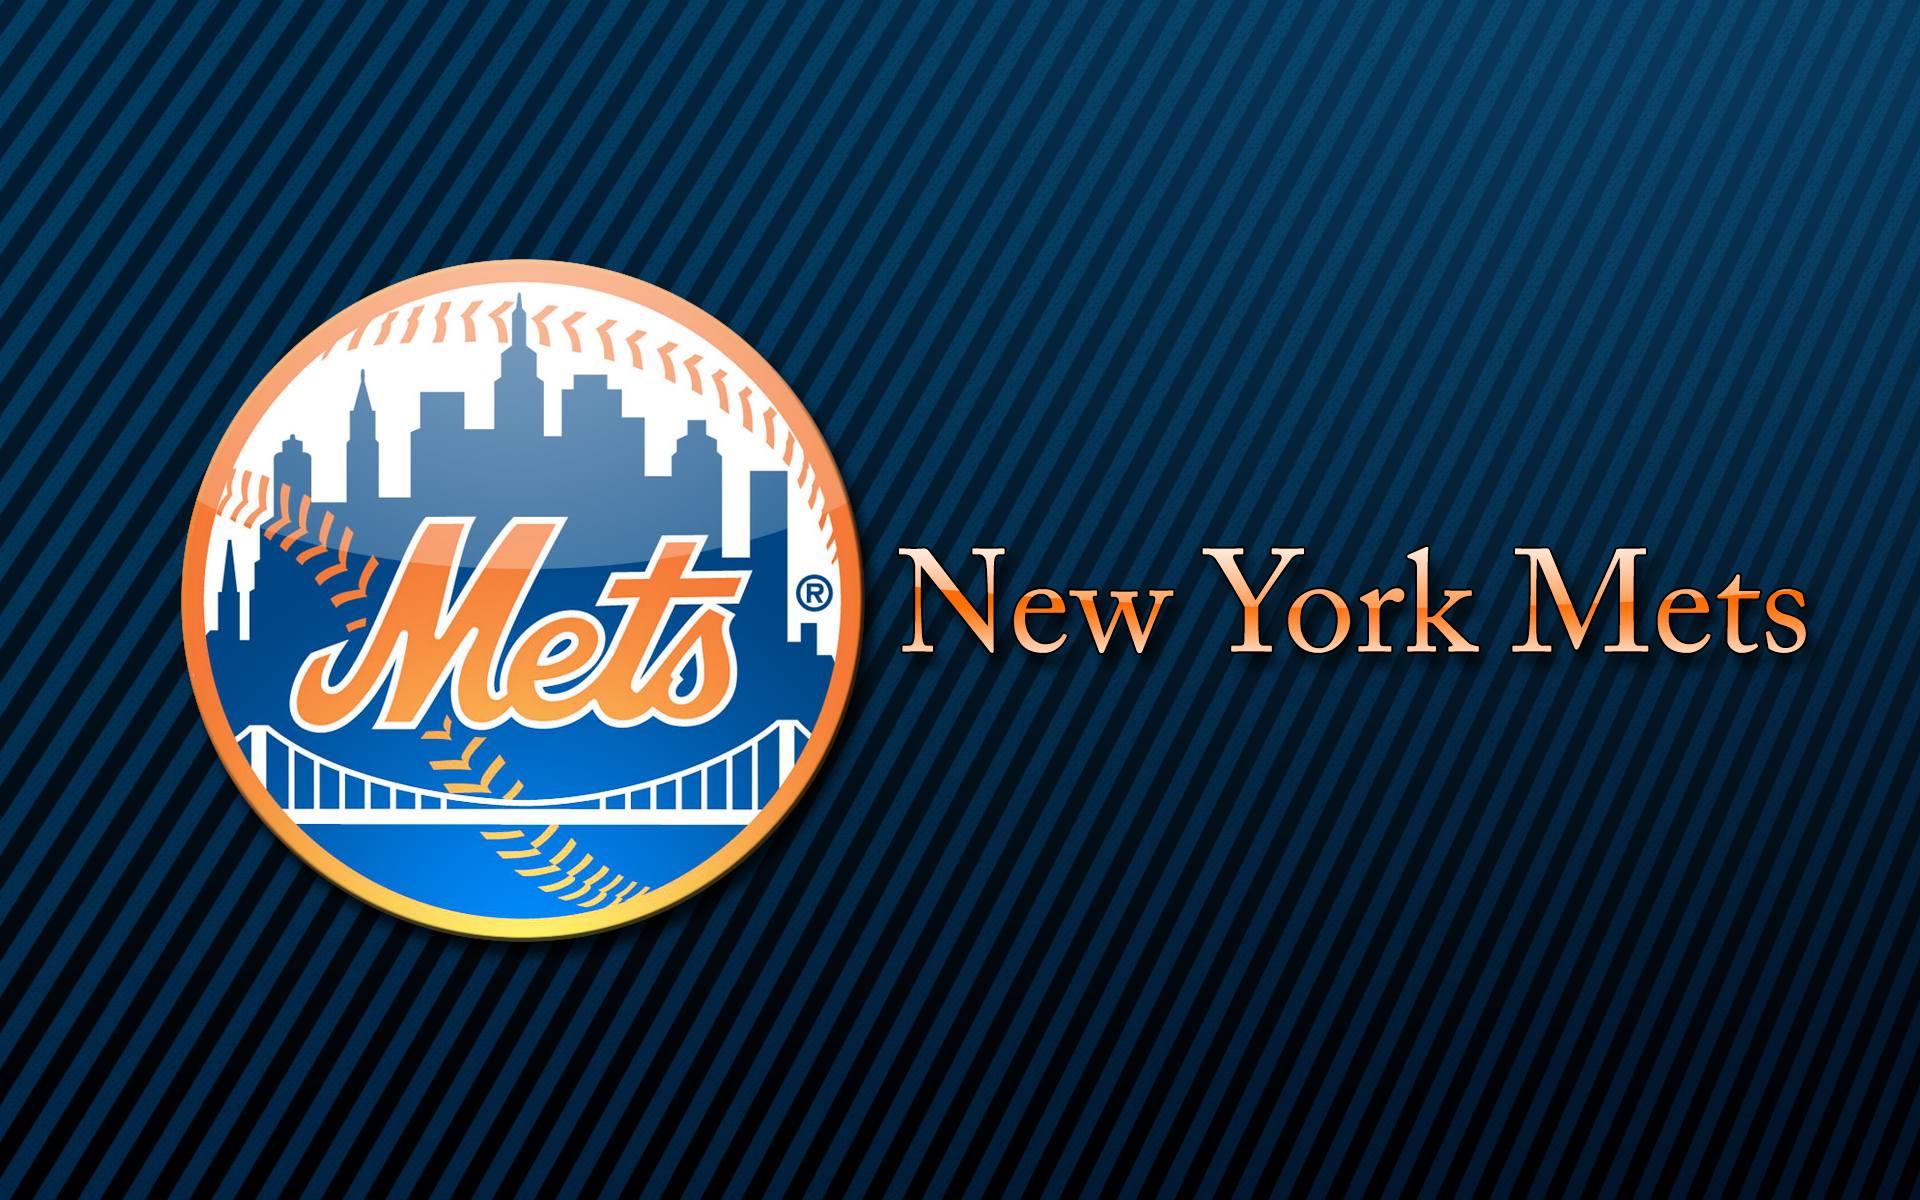 Free New York Mets desktop image New York Mets wallpapers 1920x1200